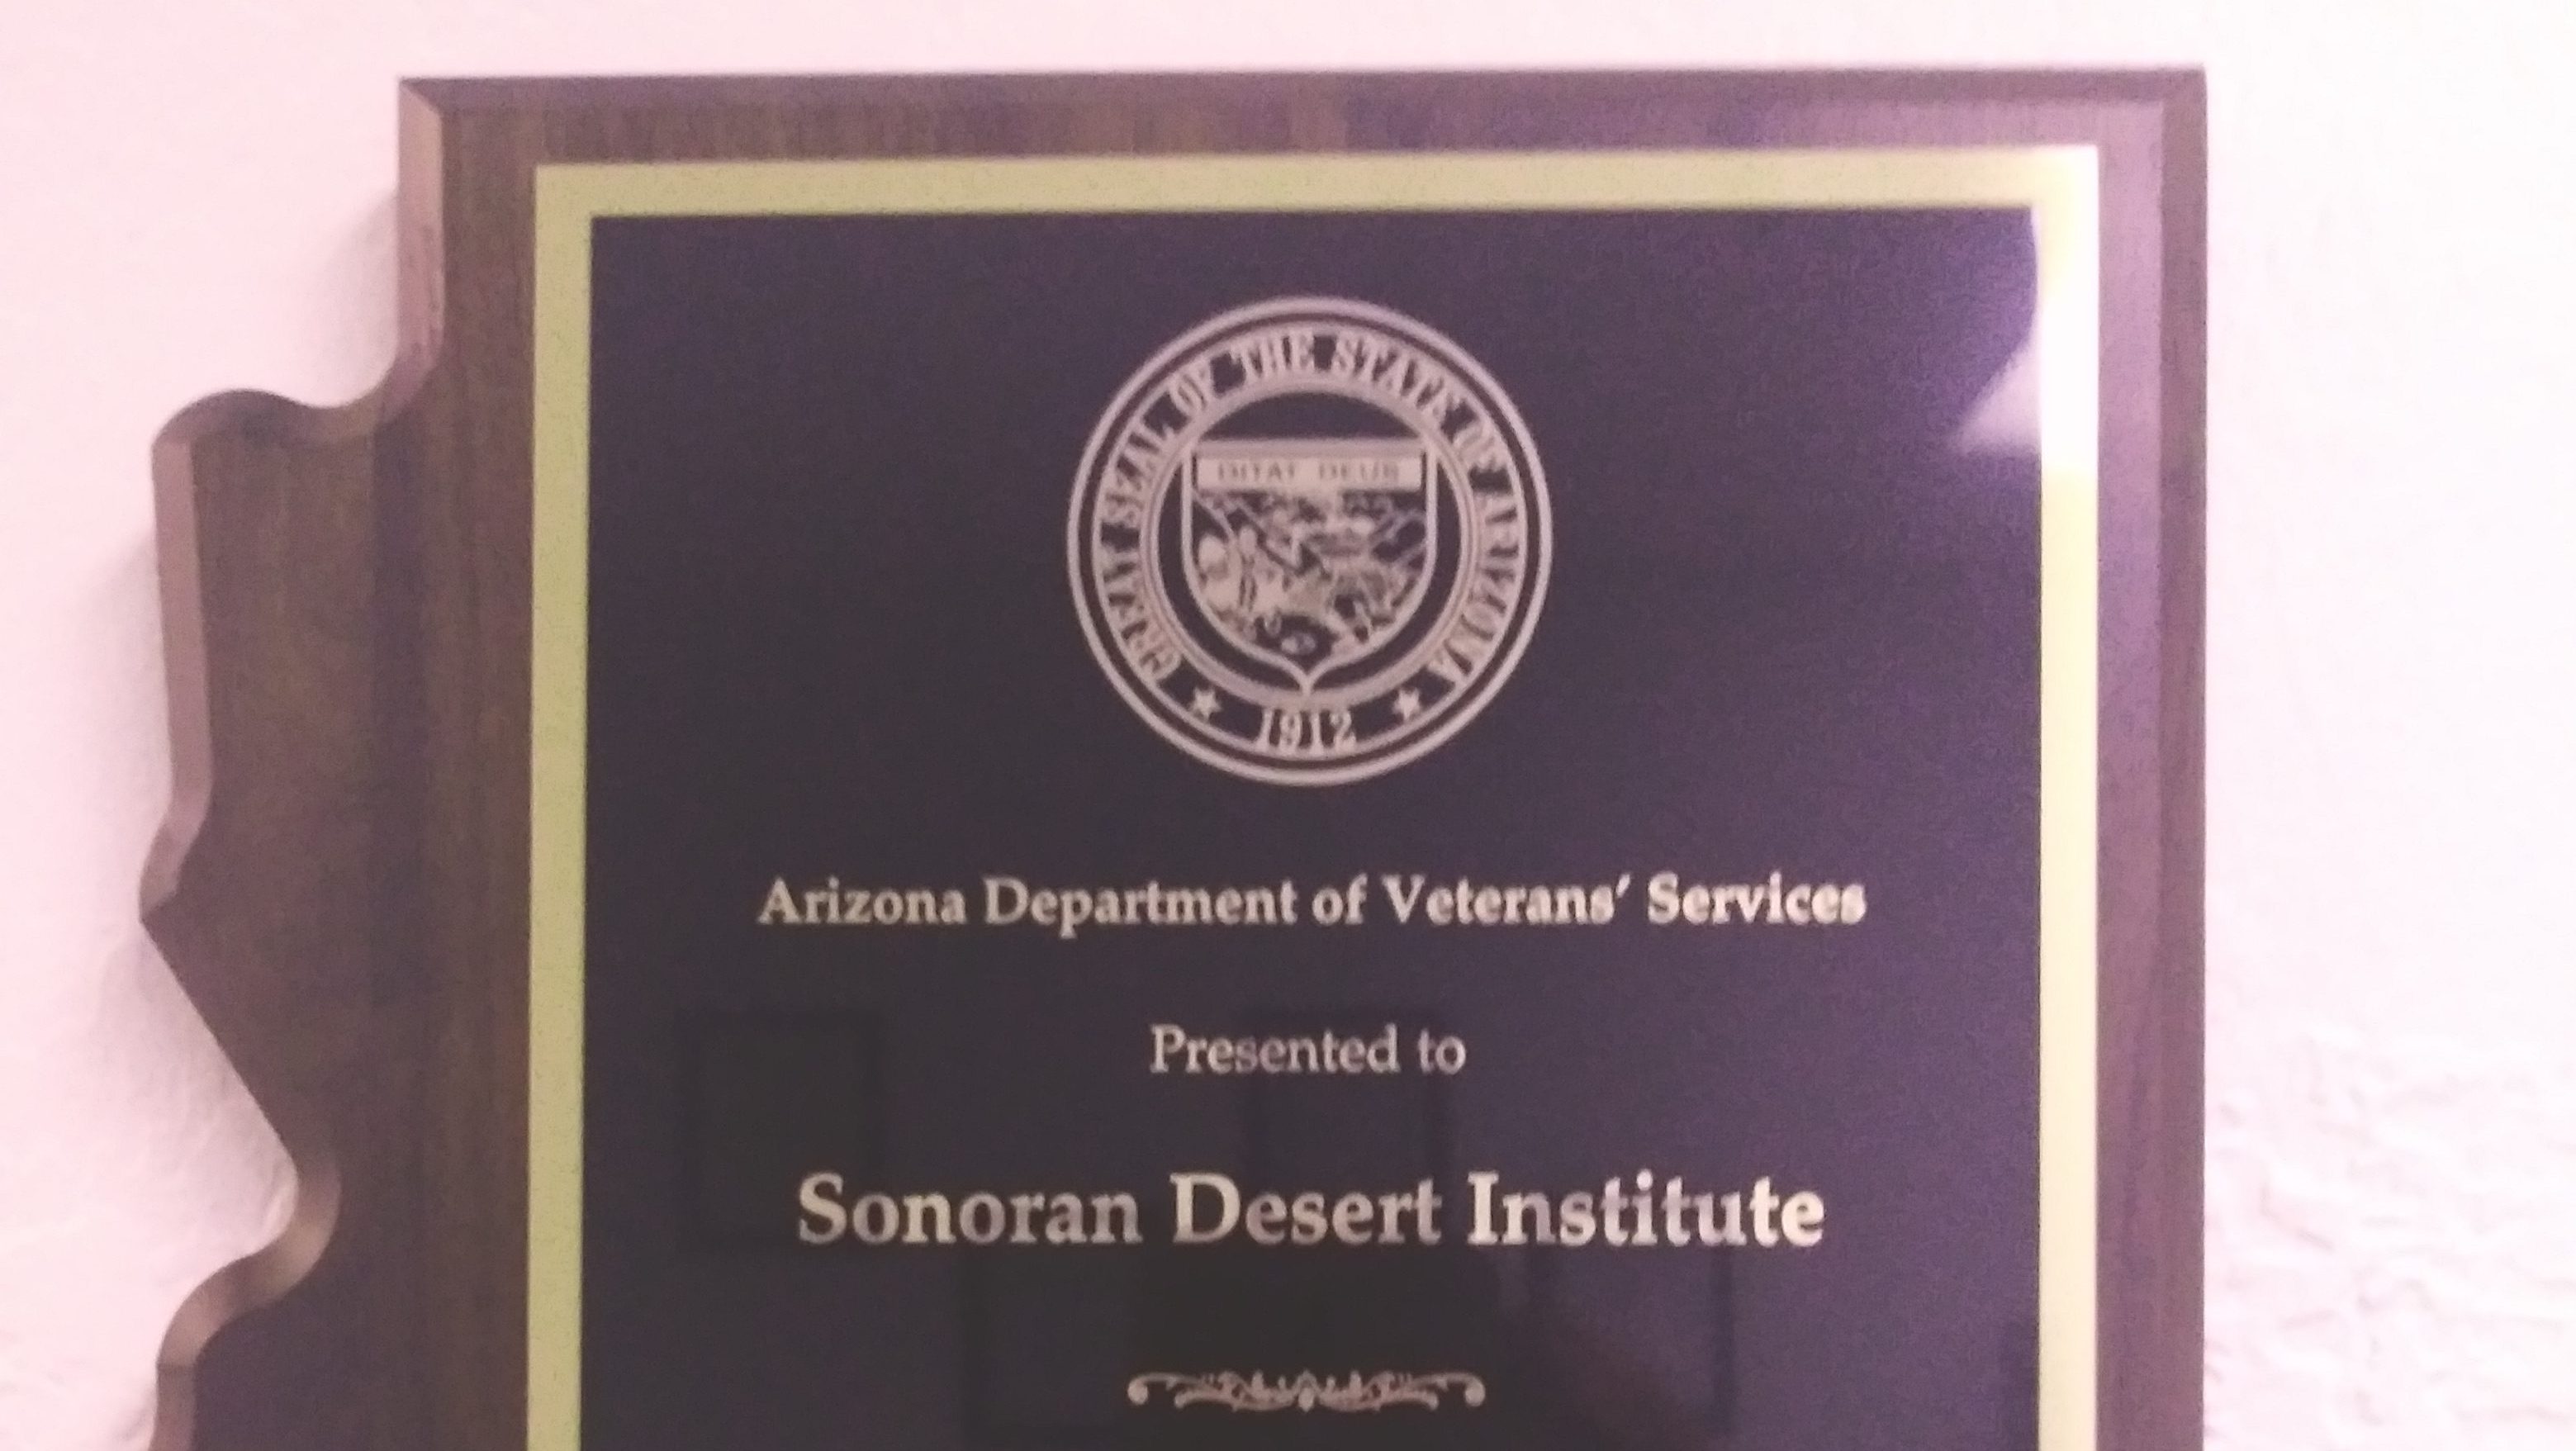 Close up shot of a plaque awarded to SDI